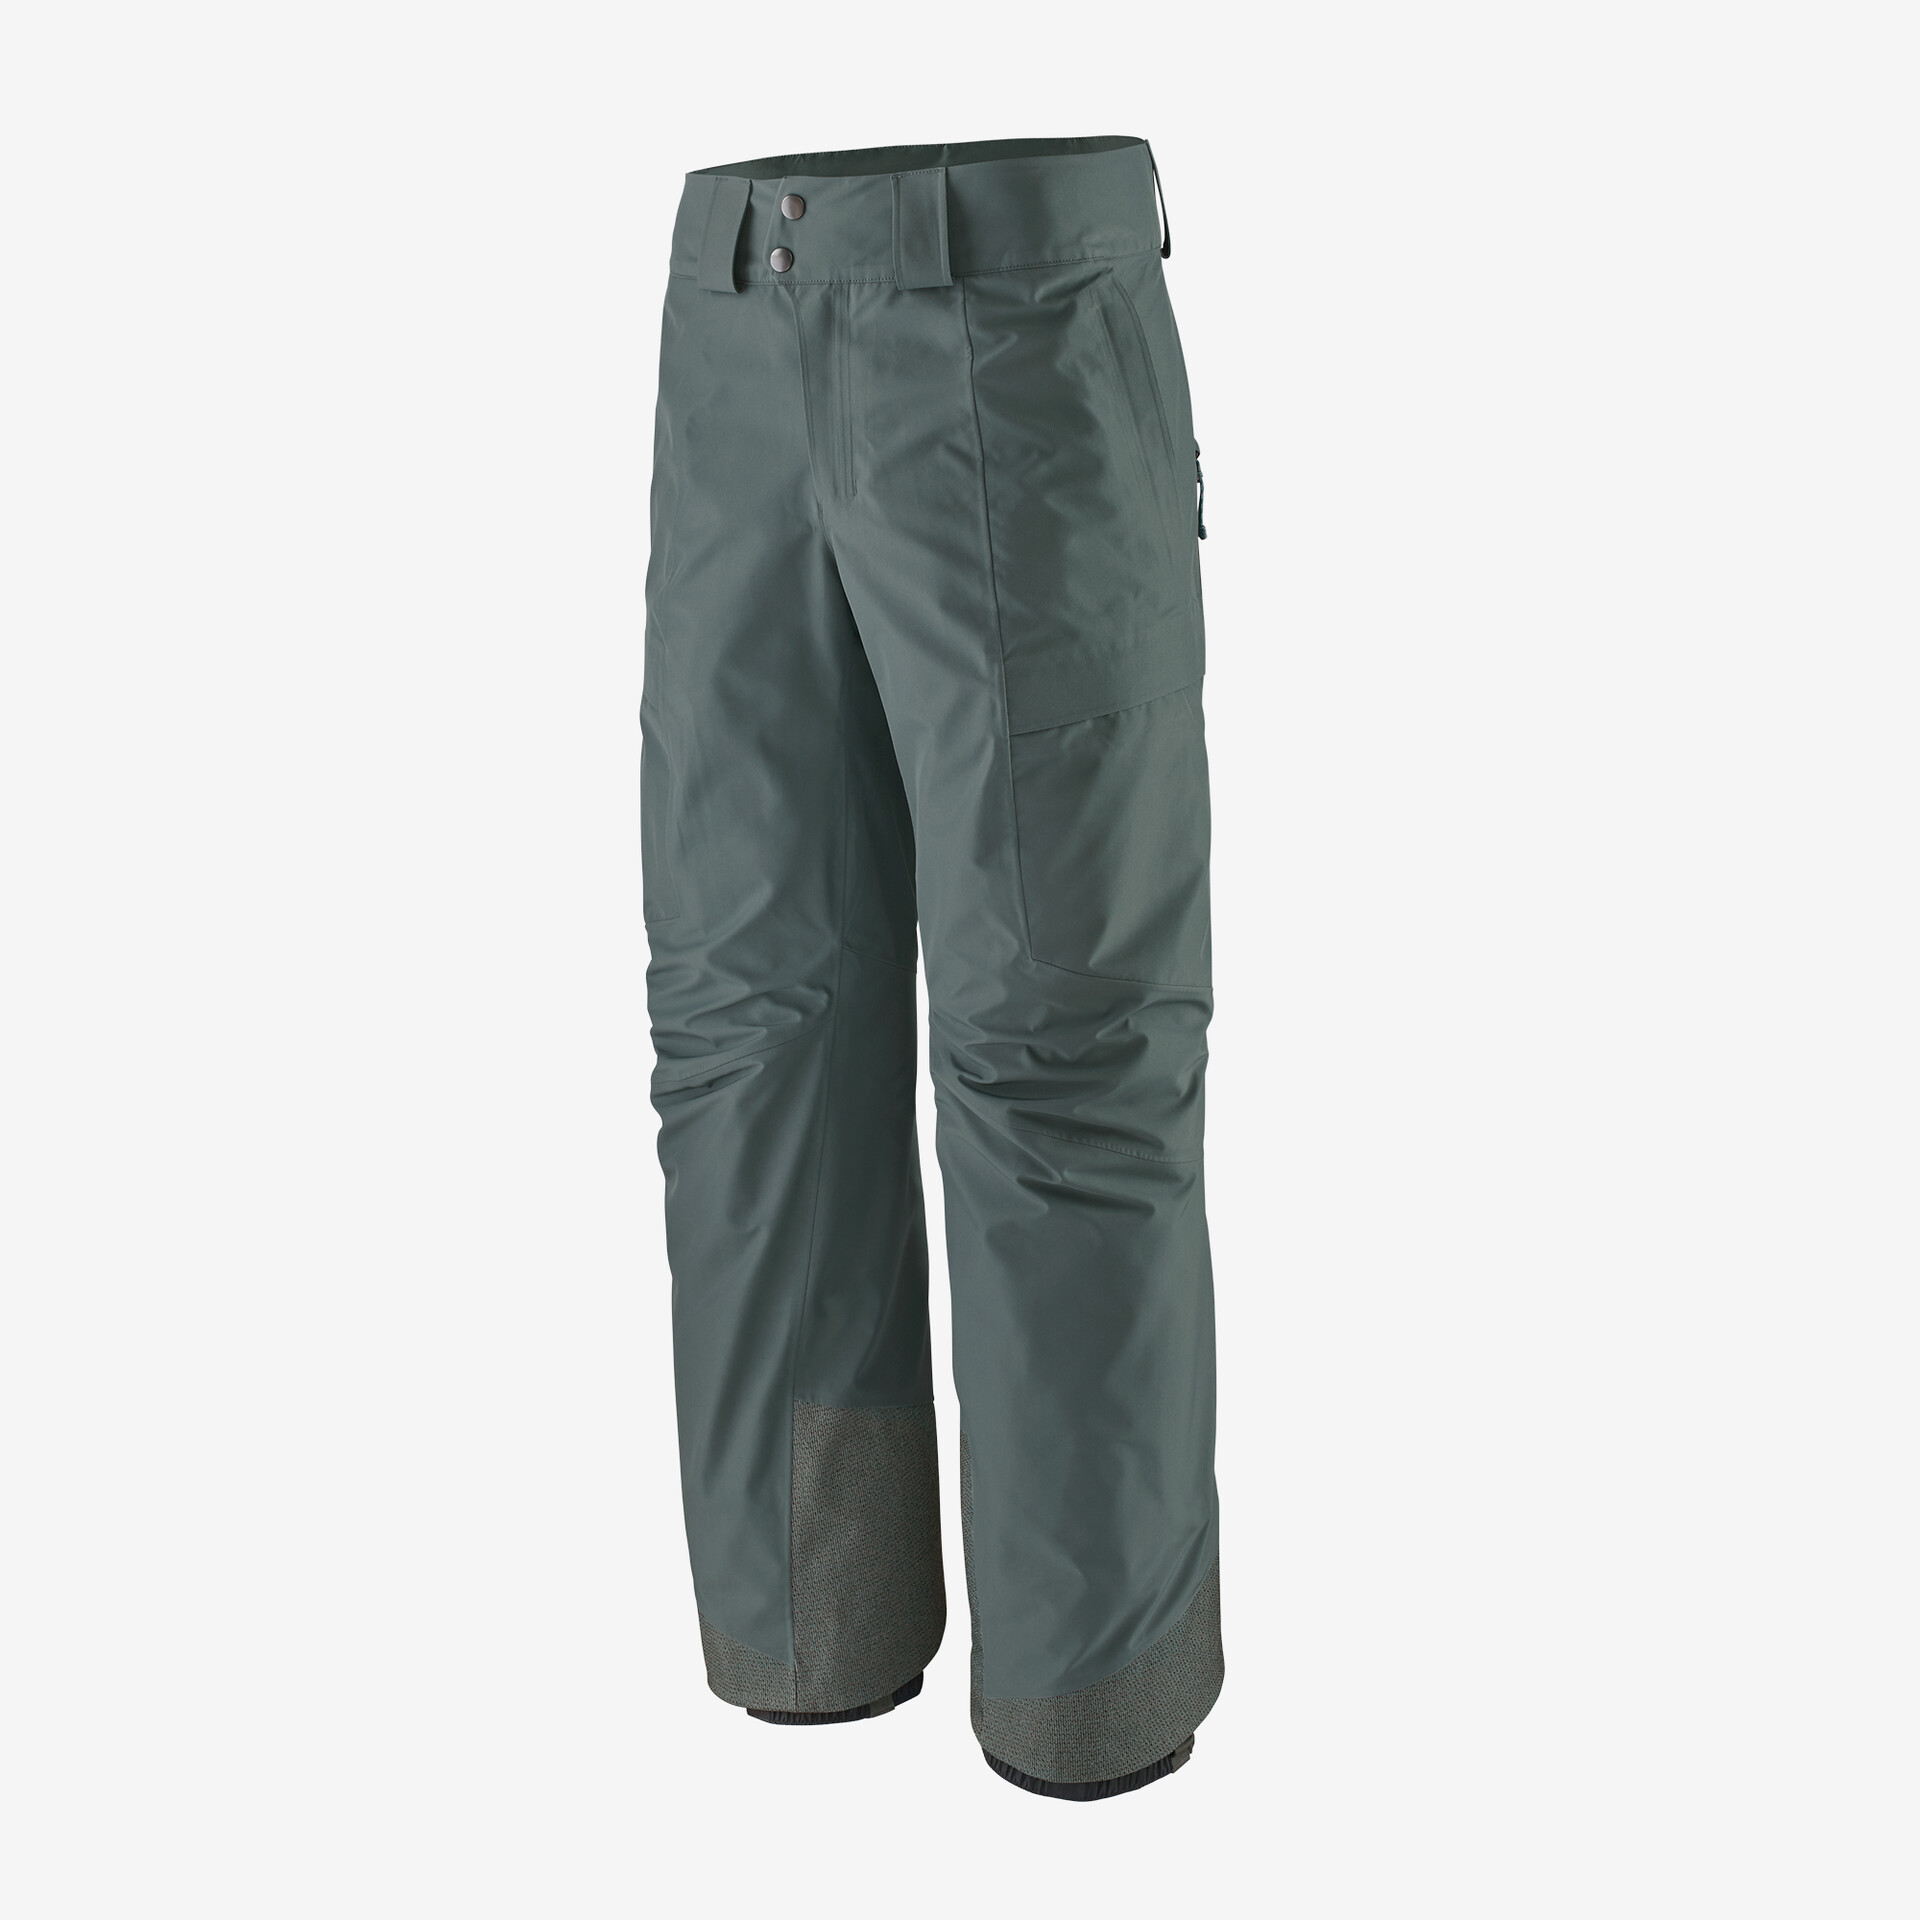 Мужские брюки Storm Shift Patagonia, нуво зеленый мужские брюки storm shift patagonia мус коричневый